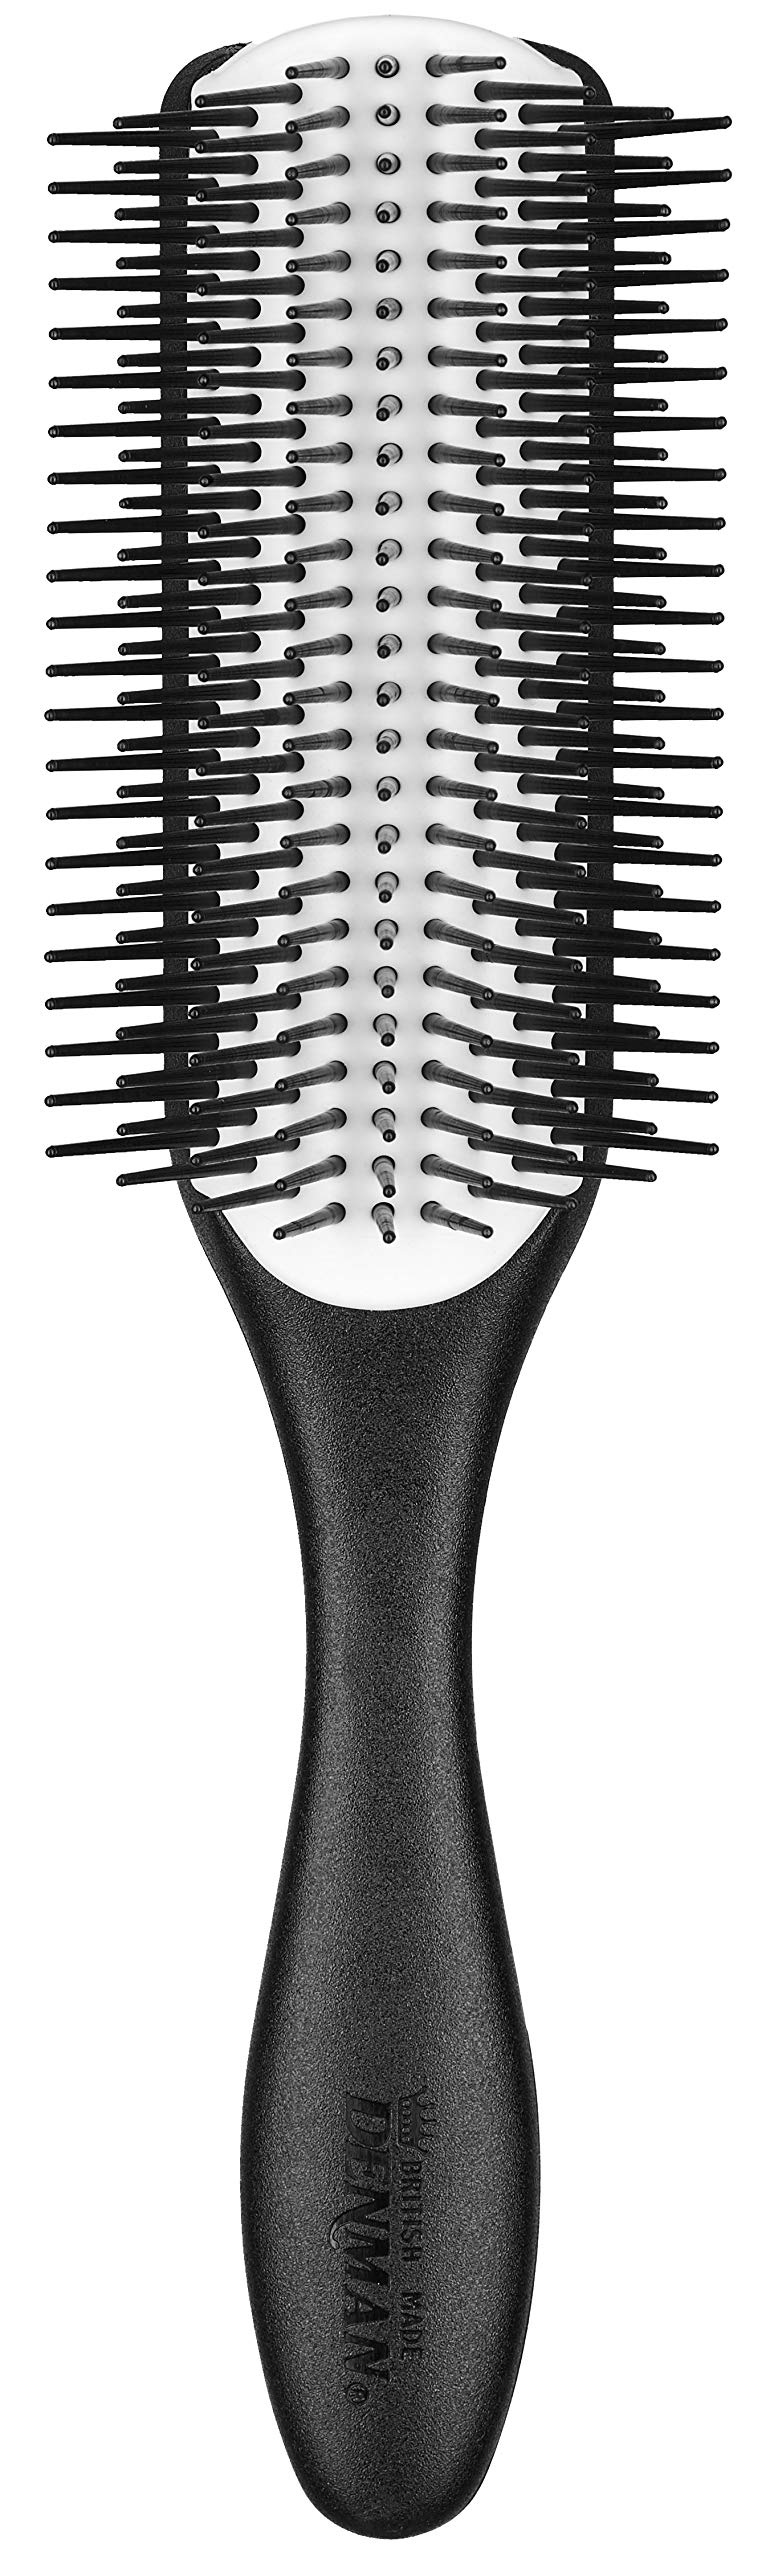 Denman Haarbürste D4N (Langhaarbürste), zum Stylen und Glätten langer Haare, antistatisches Gummikissen und Nylonborsten, 9-reihig, schwarz/weiß